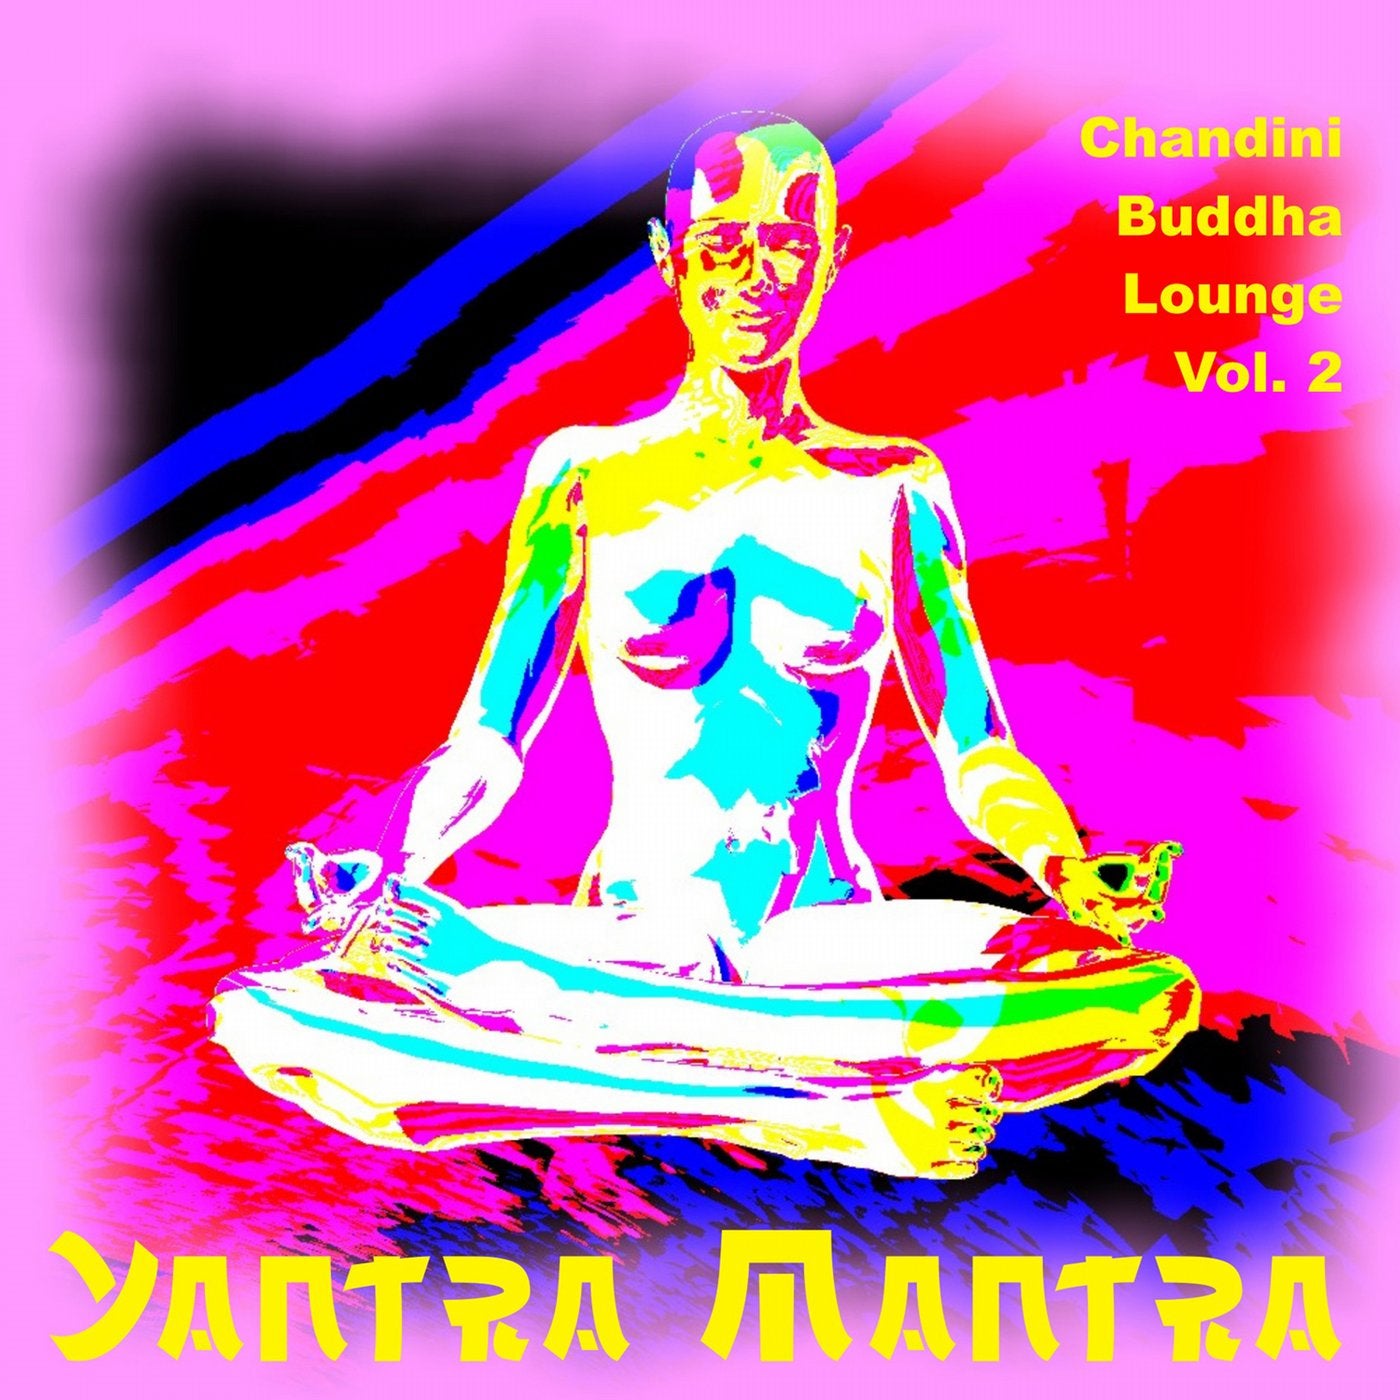 Chandini Buddha Lounge, Vol. 2